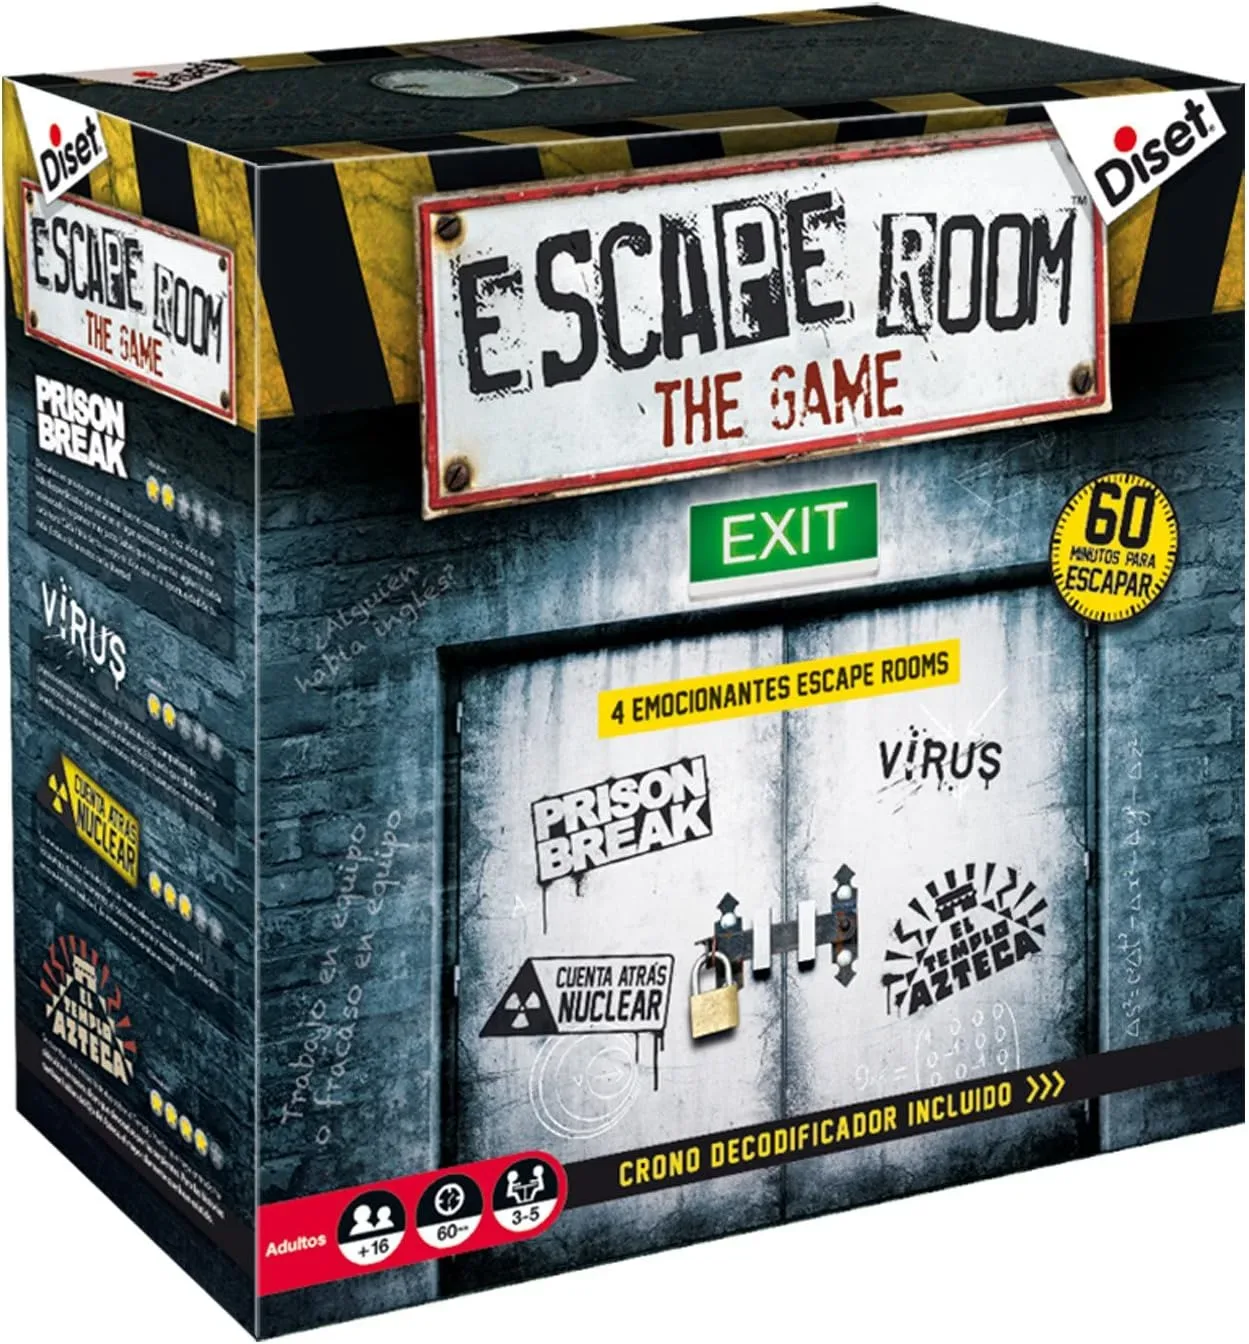 Ver categoría de escape room the game